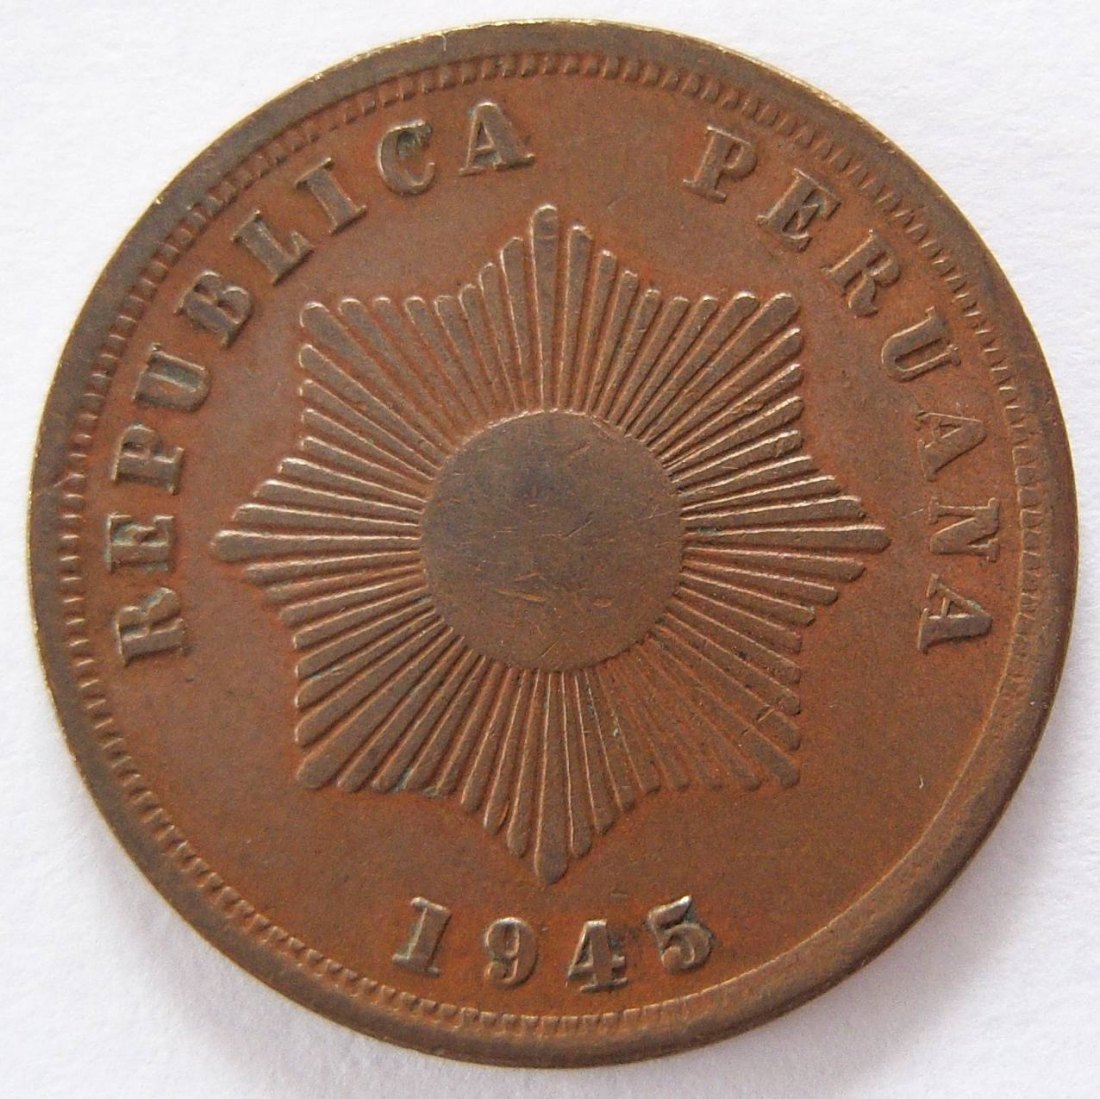  Peru Dos 2 Centavos 1945   